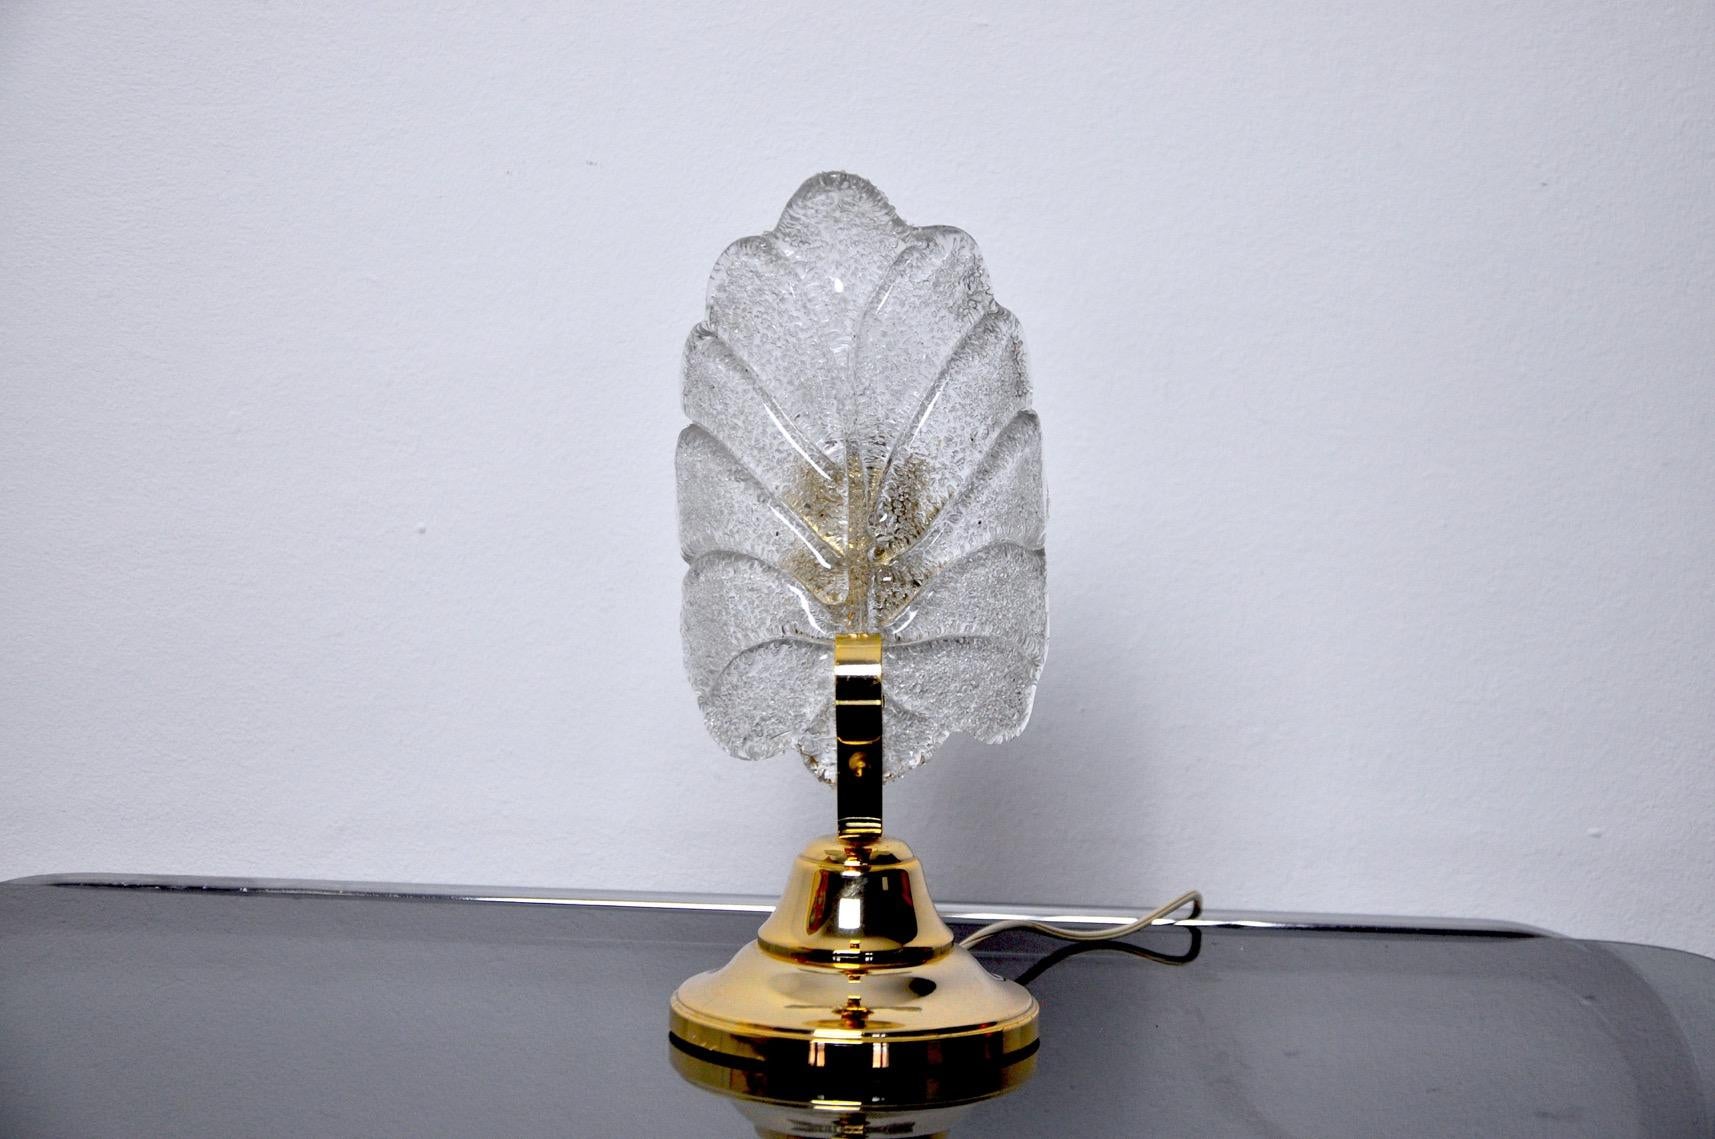 Très belle lampe de table de Carl Fagerlund pour Lyfa des années 60. La lampe est fabriquée en laiton et en verre en forme de feuille. La lumière diffuse est douce et harmonieuse, parfaite pour illuminer votre intérieur. Marque du temps